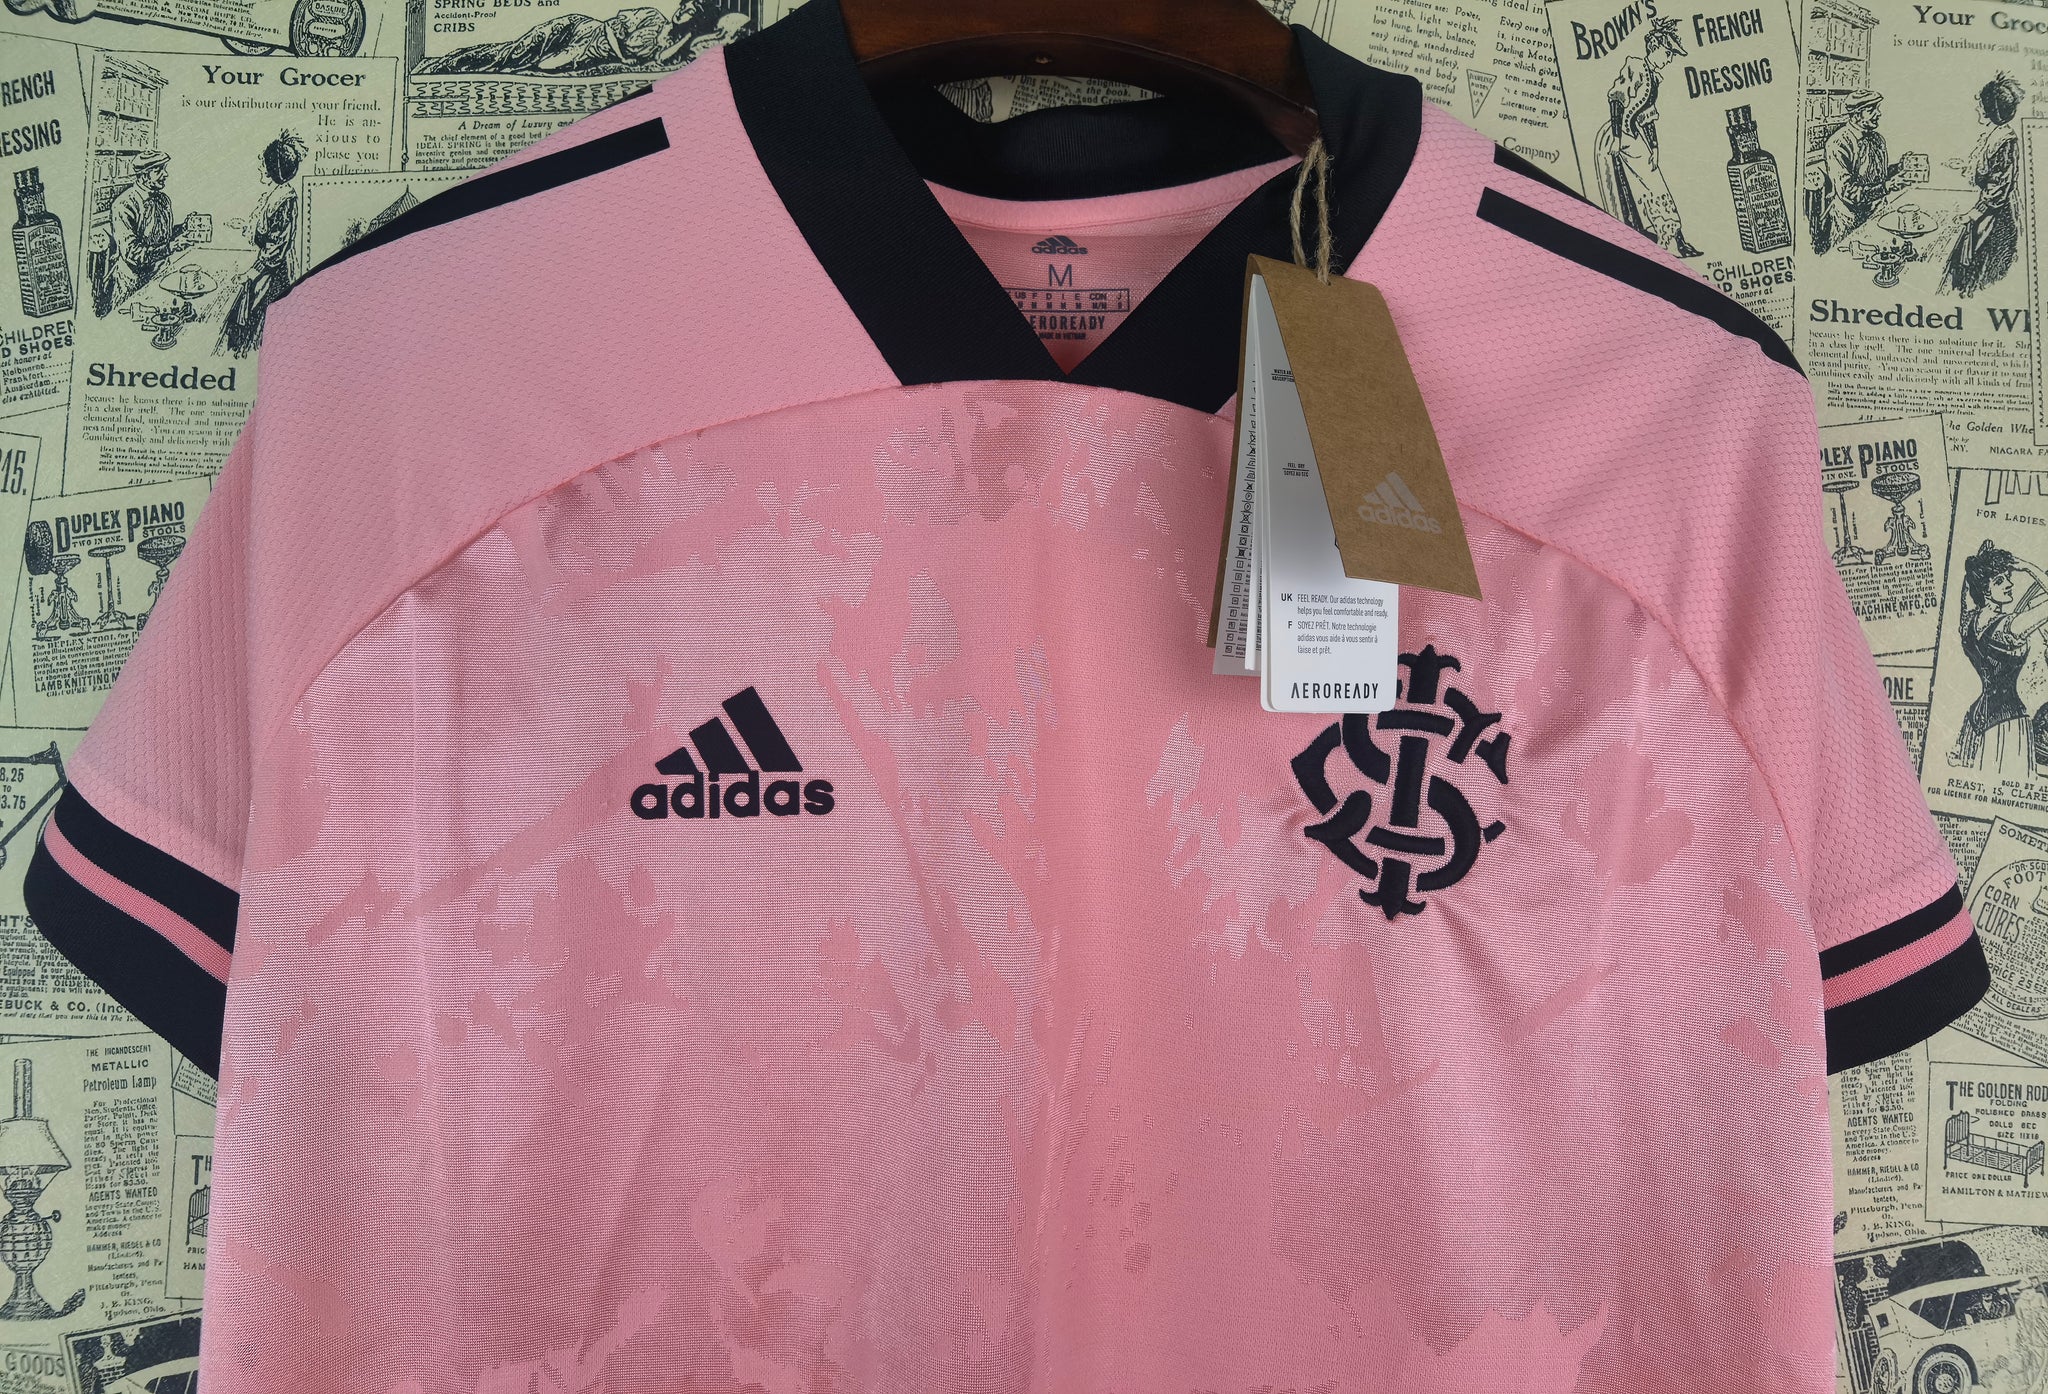 Camisa do Internacional Feminina Special Edition Pink 21/22